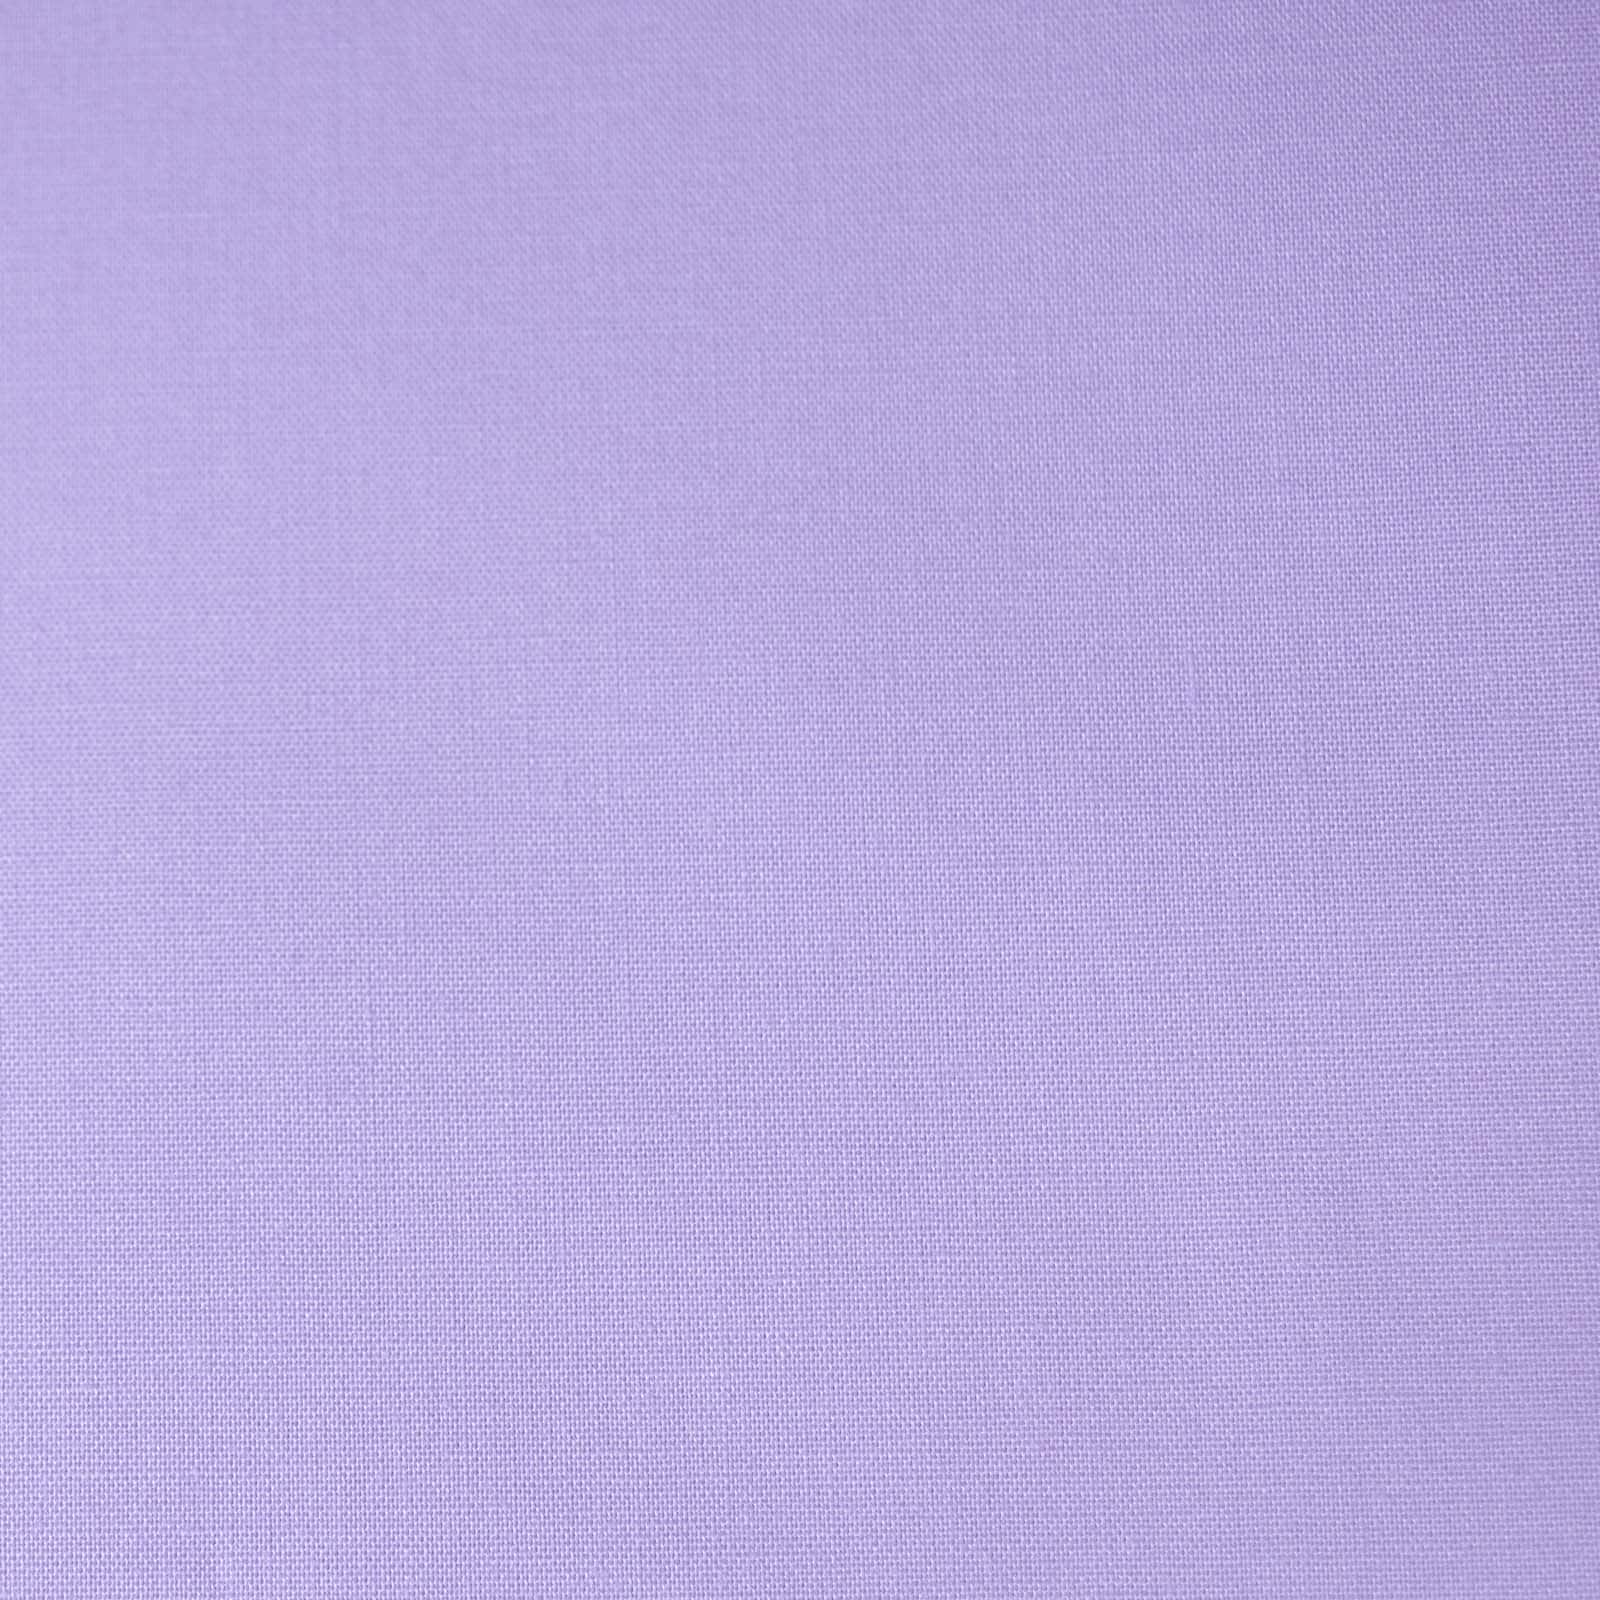 Lavender Premium Quilt Cotton Fabric